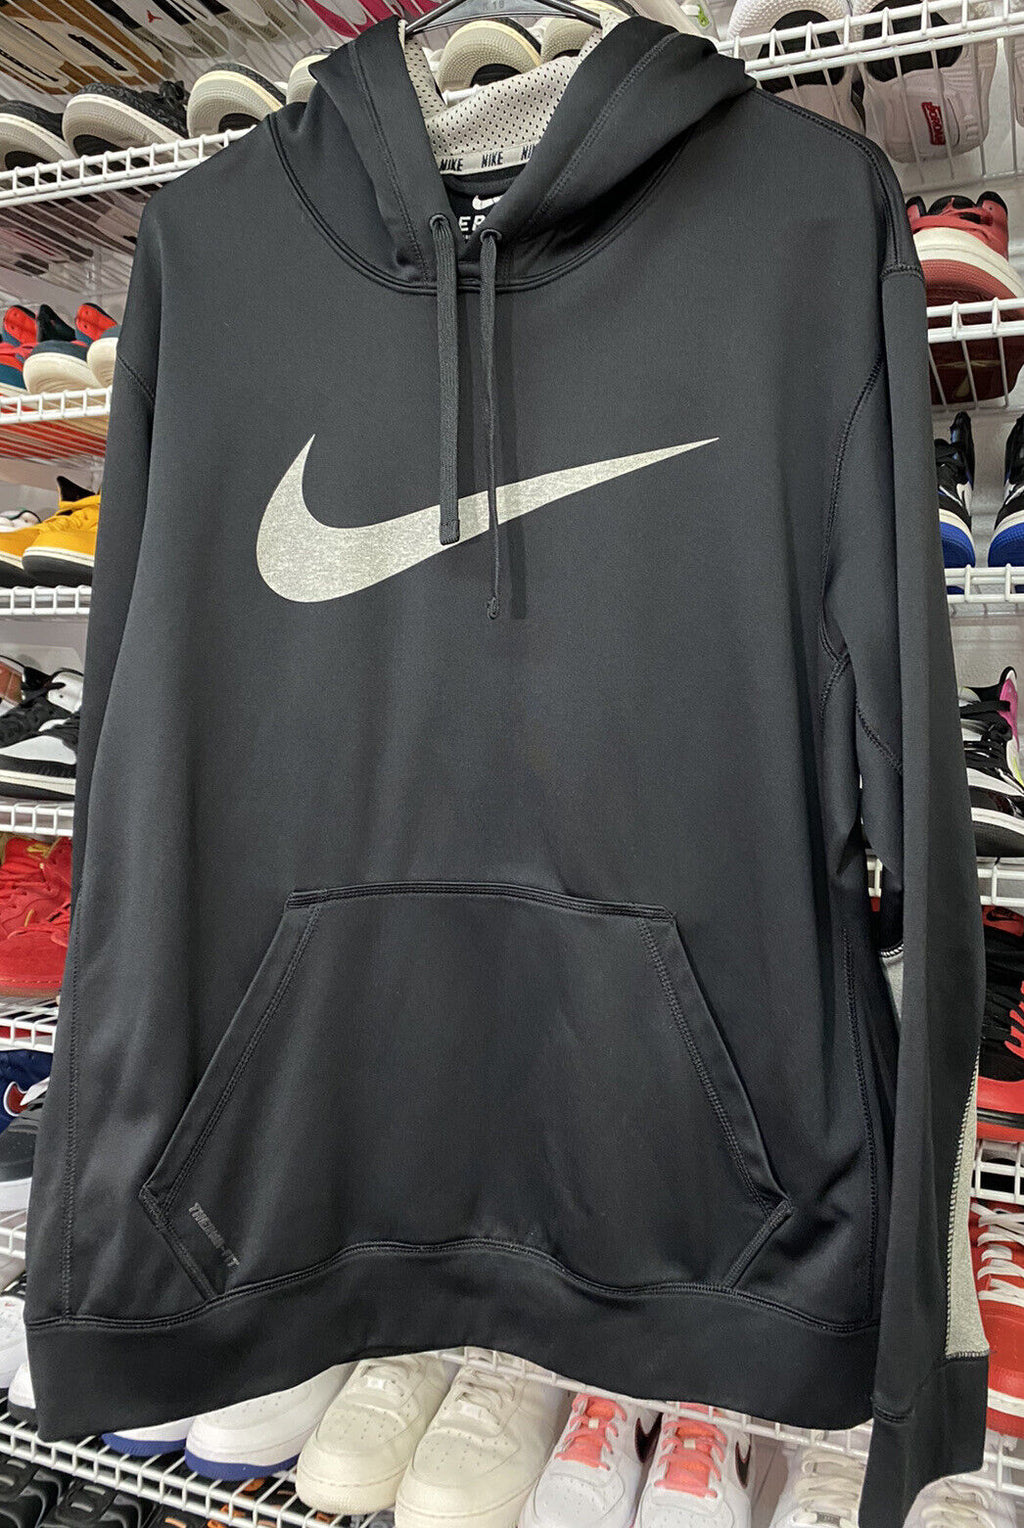 Nike Therma Fit Men's Black Gray Hoodie Swoosh Sz Large - Hype Stew Sneakers Detroit